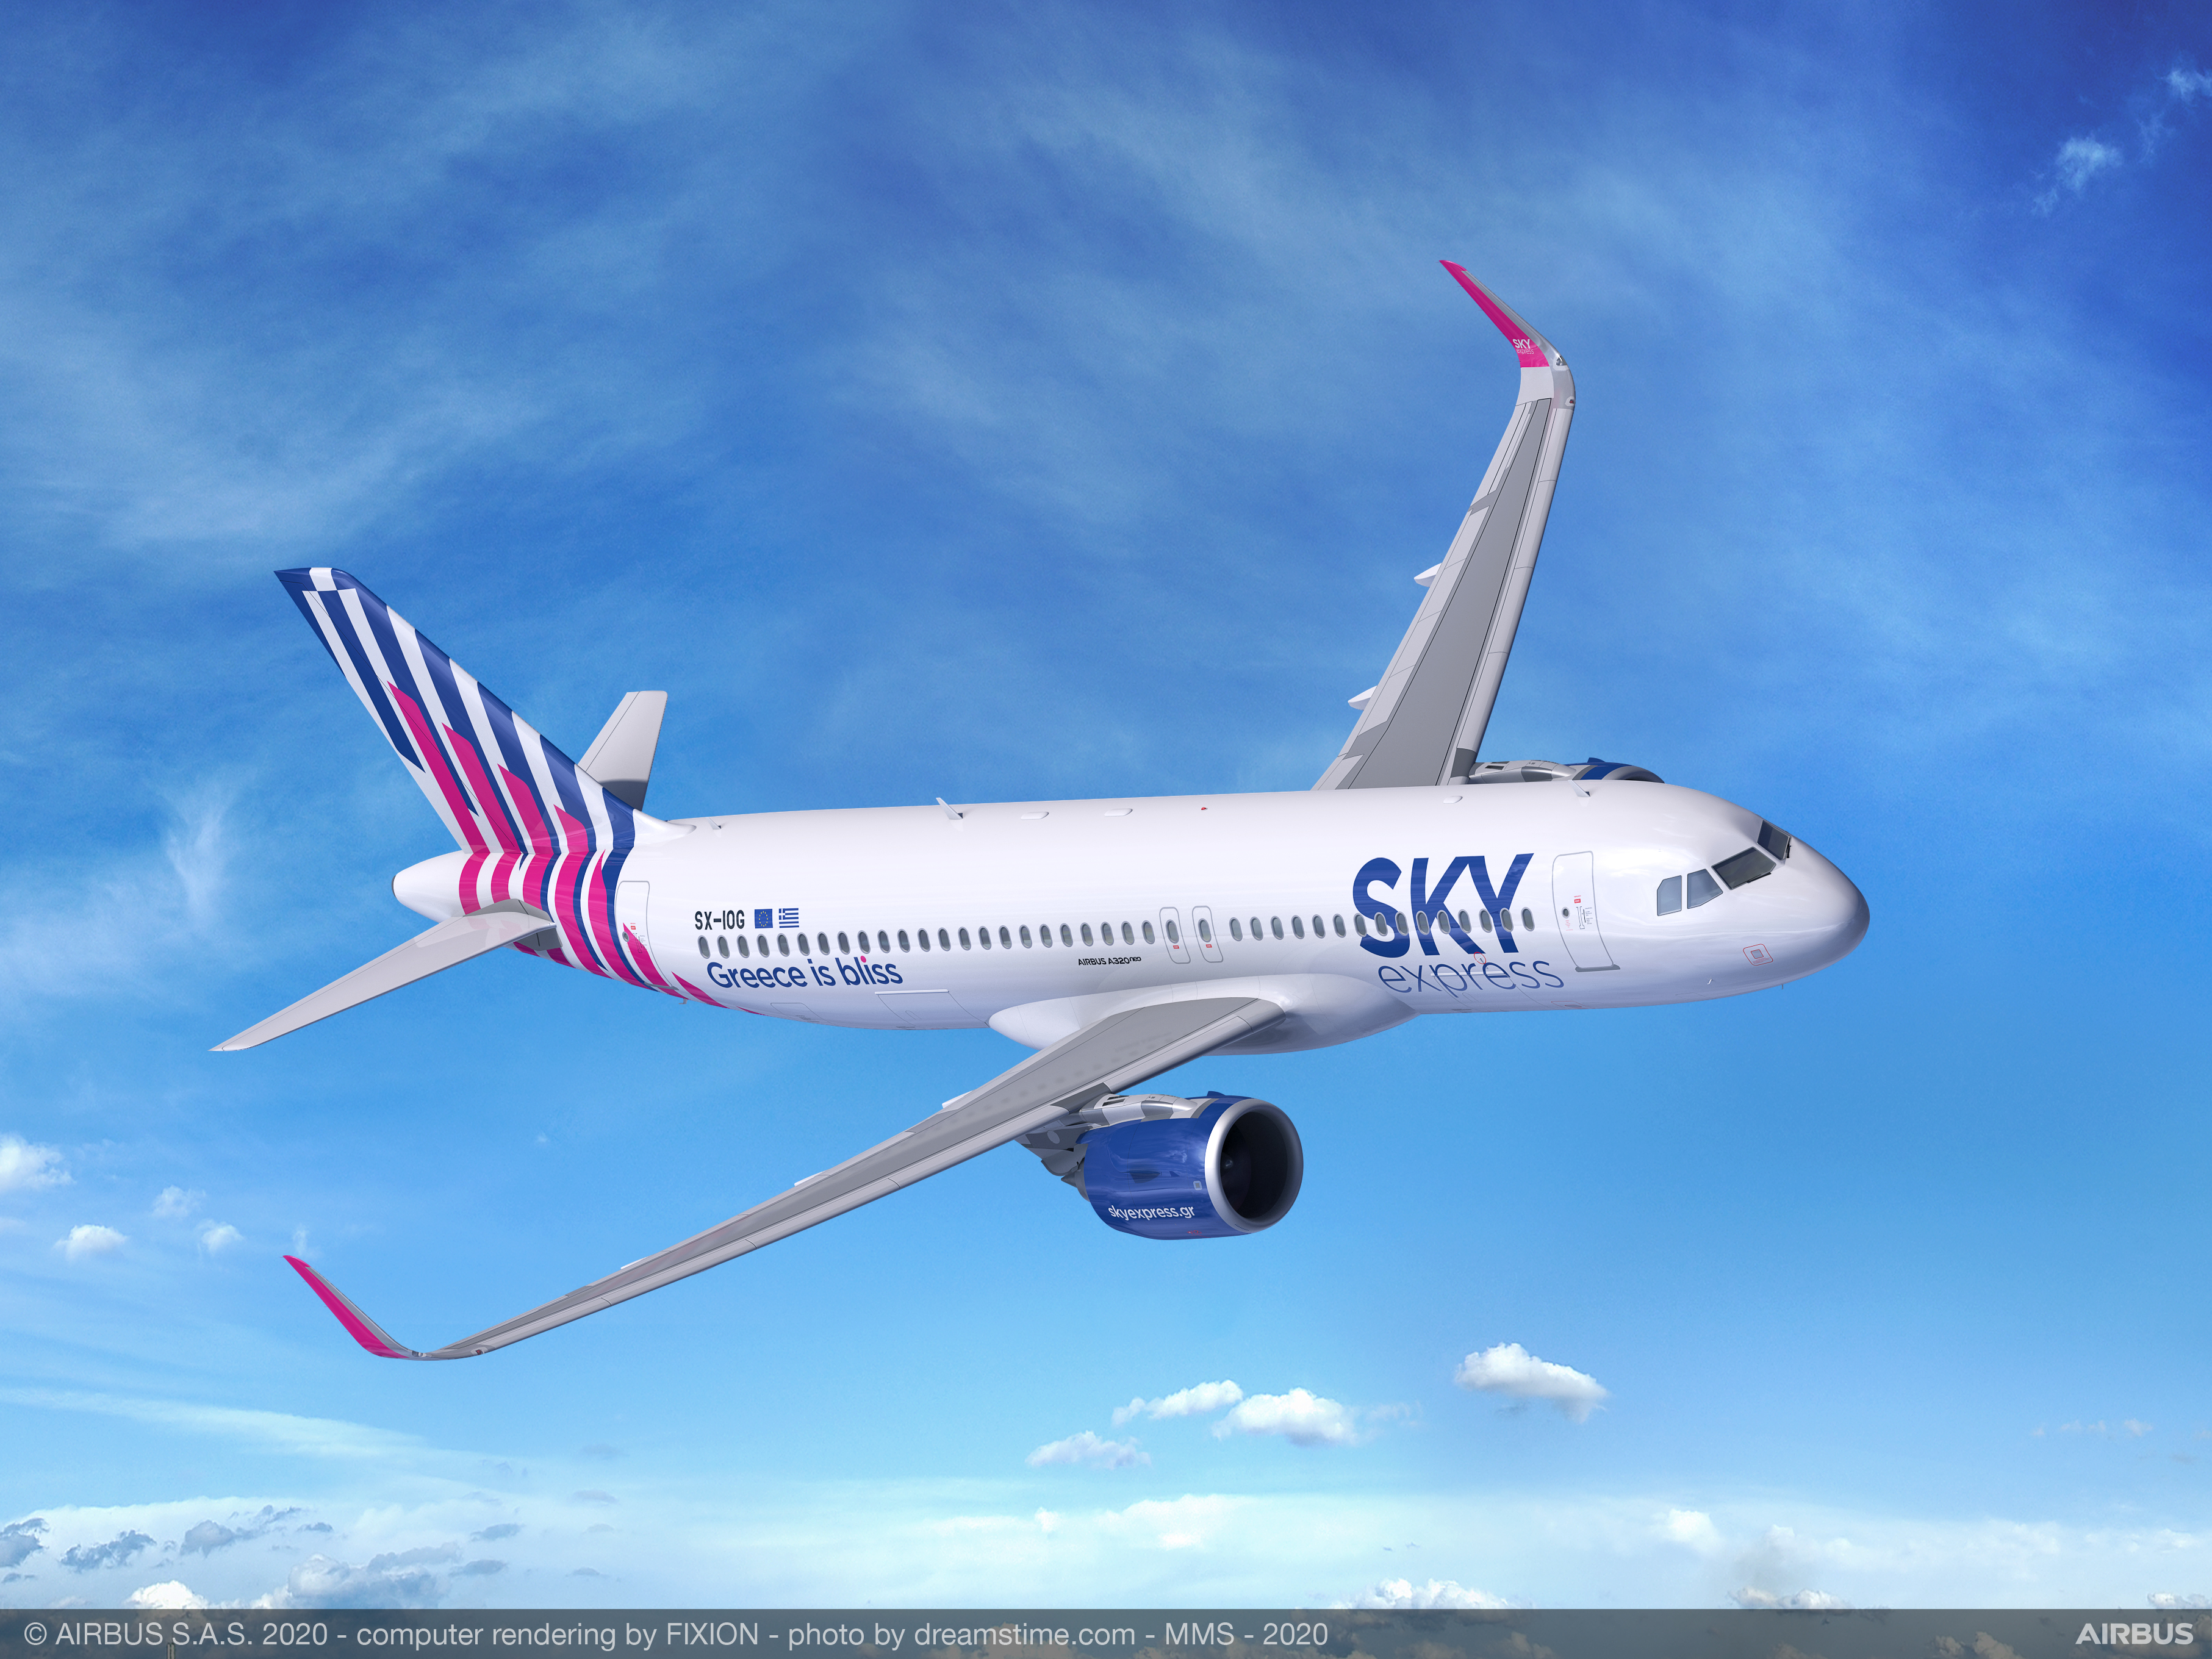 Η SKY express στη νέα εποχή – Αλλάζει το τοπίο των αερομεταφορών στην Ελλάδα (φωτο-βιντεο)